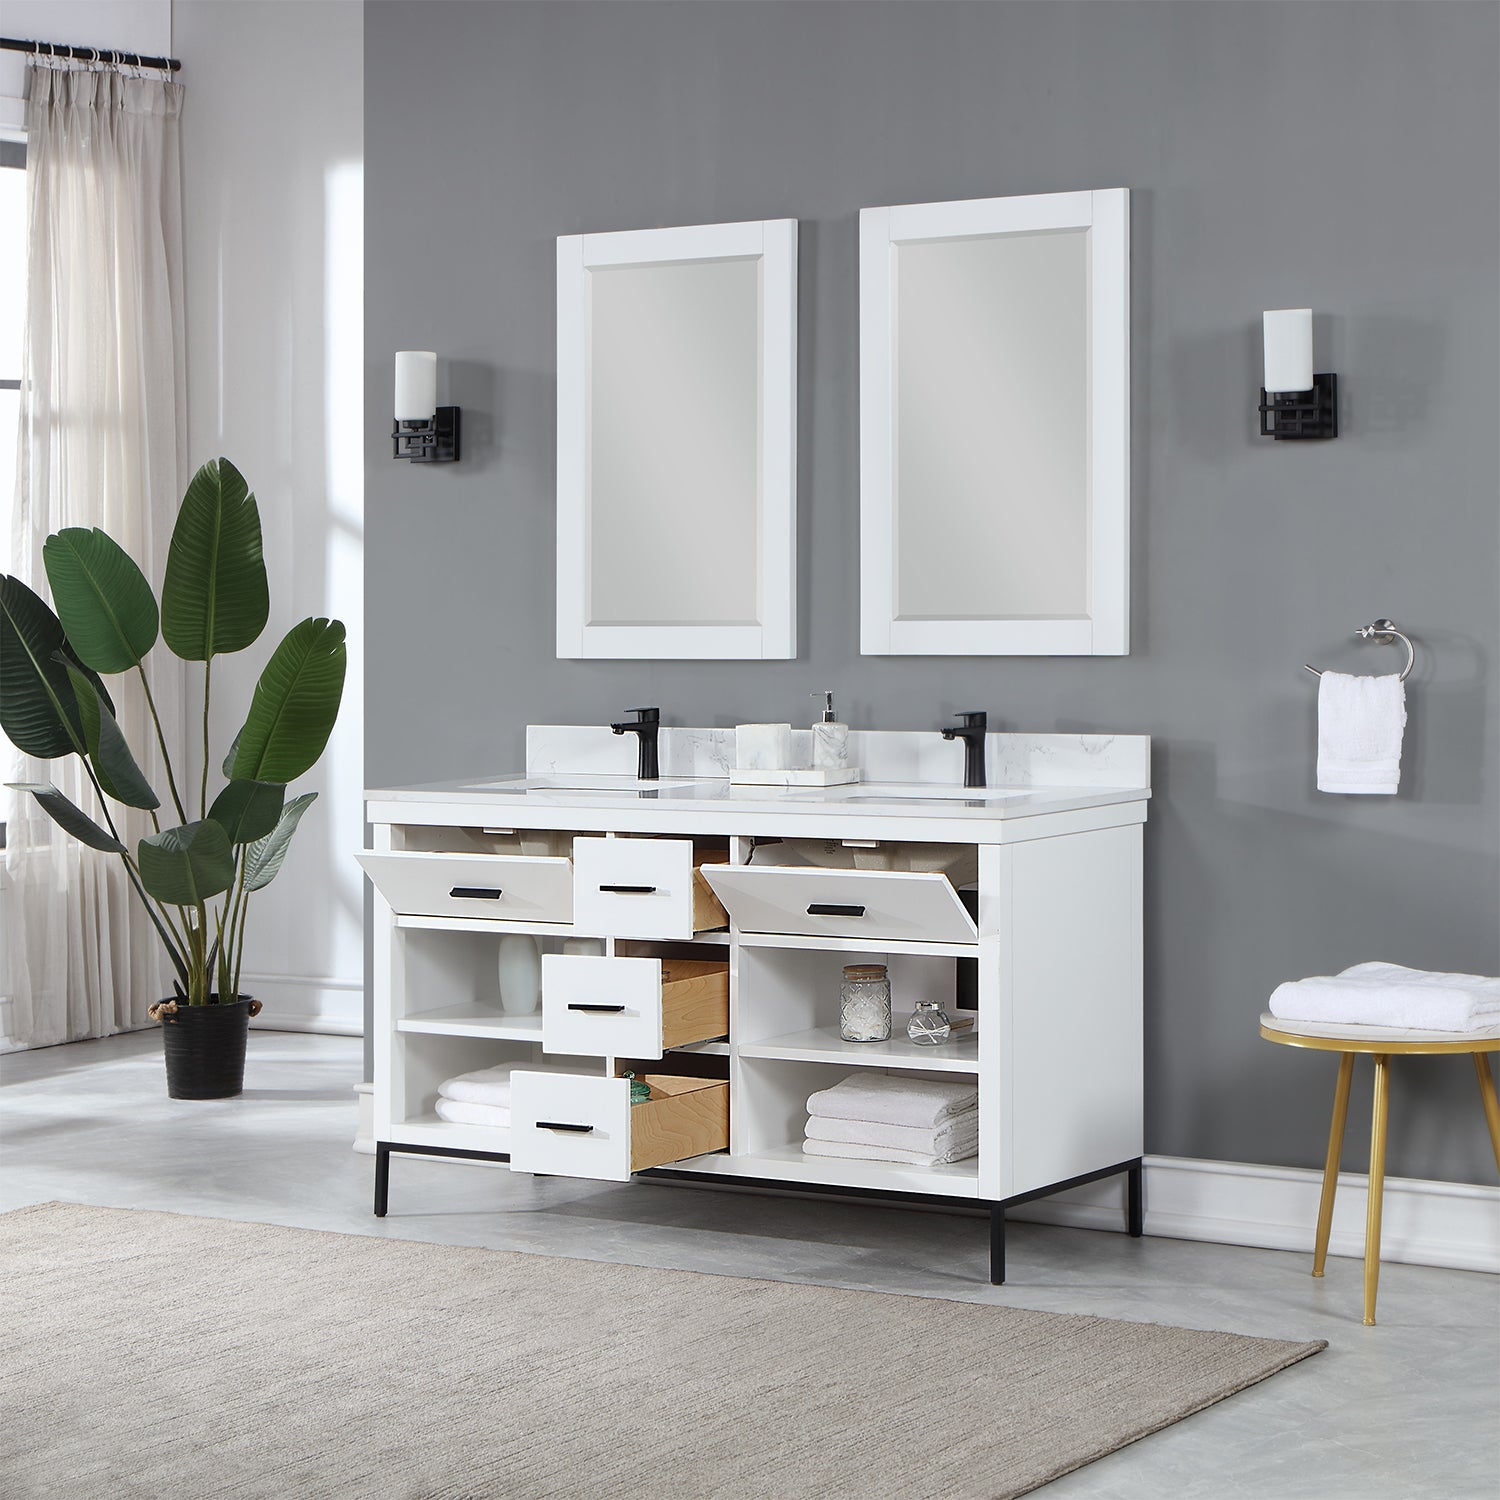 Kesia 60" Double Bathroom Vanity Set with Aosta White Composite Stone Countertop